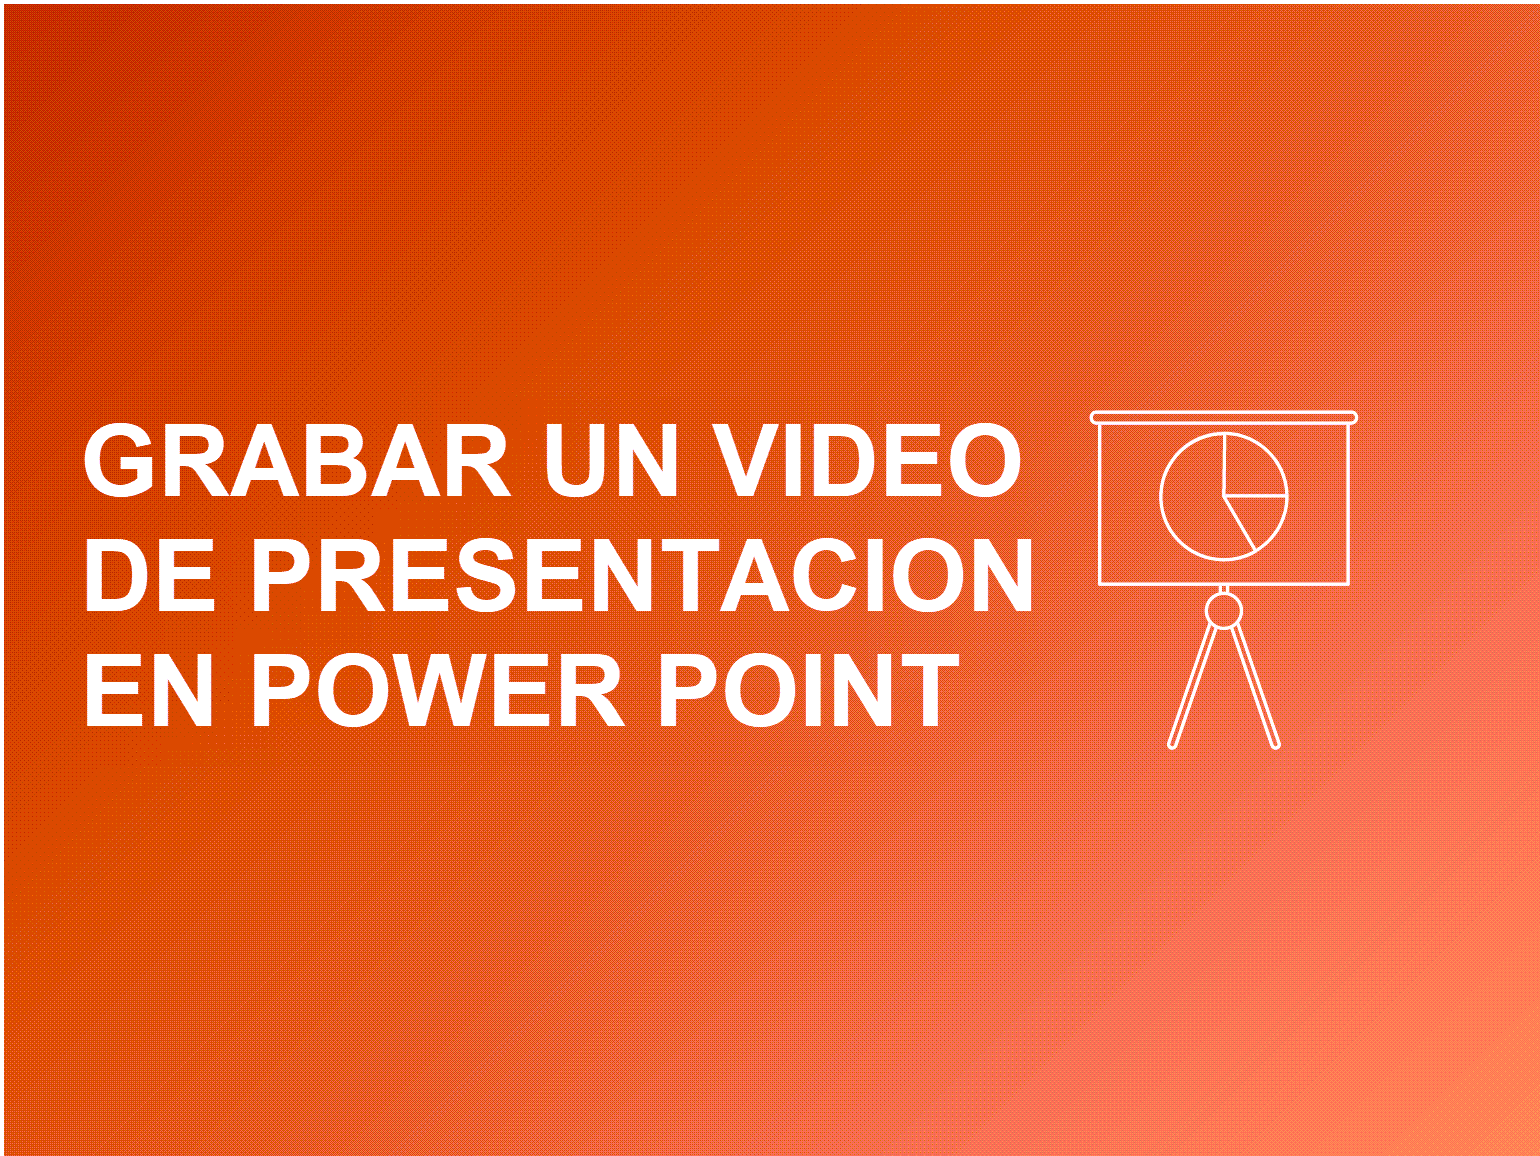 Cómo grabar un Video Power Point? The TechSmith Blog